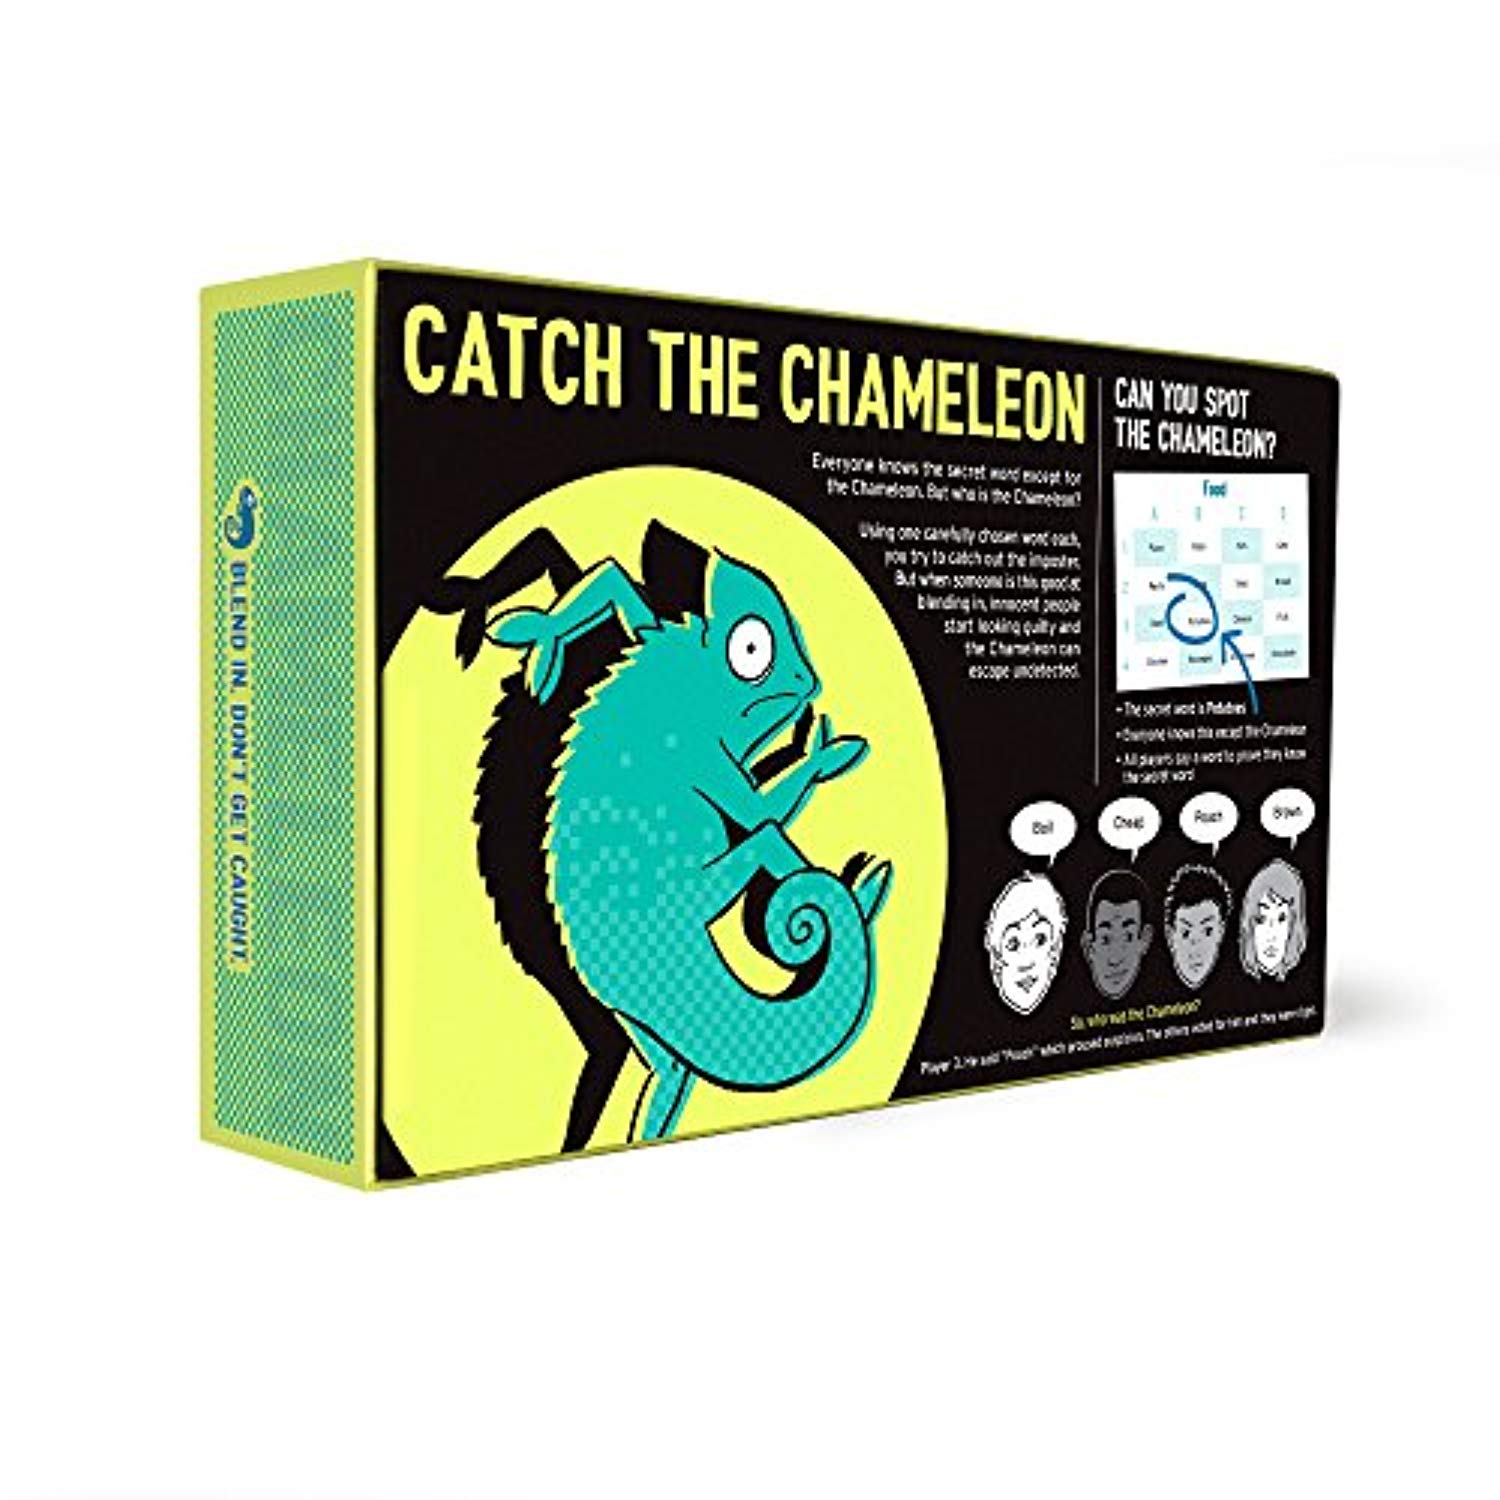 The Chameleon Board Game: Multi Award-Winning Family Game - Offer Games